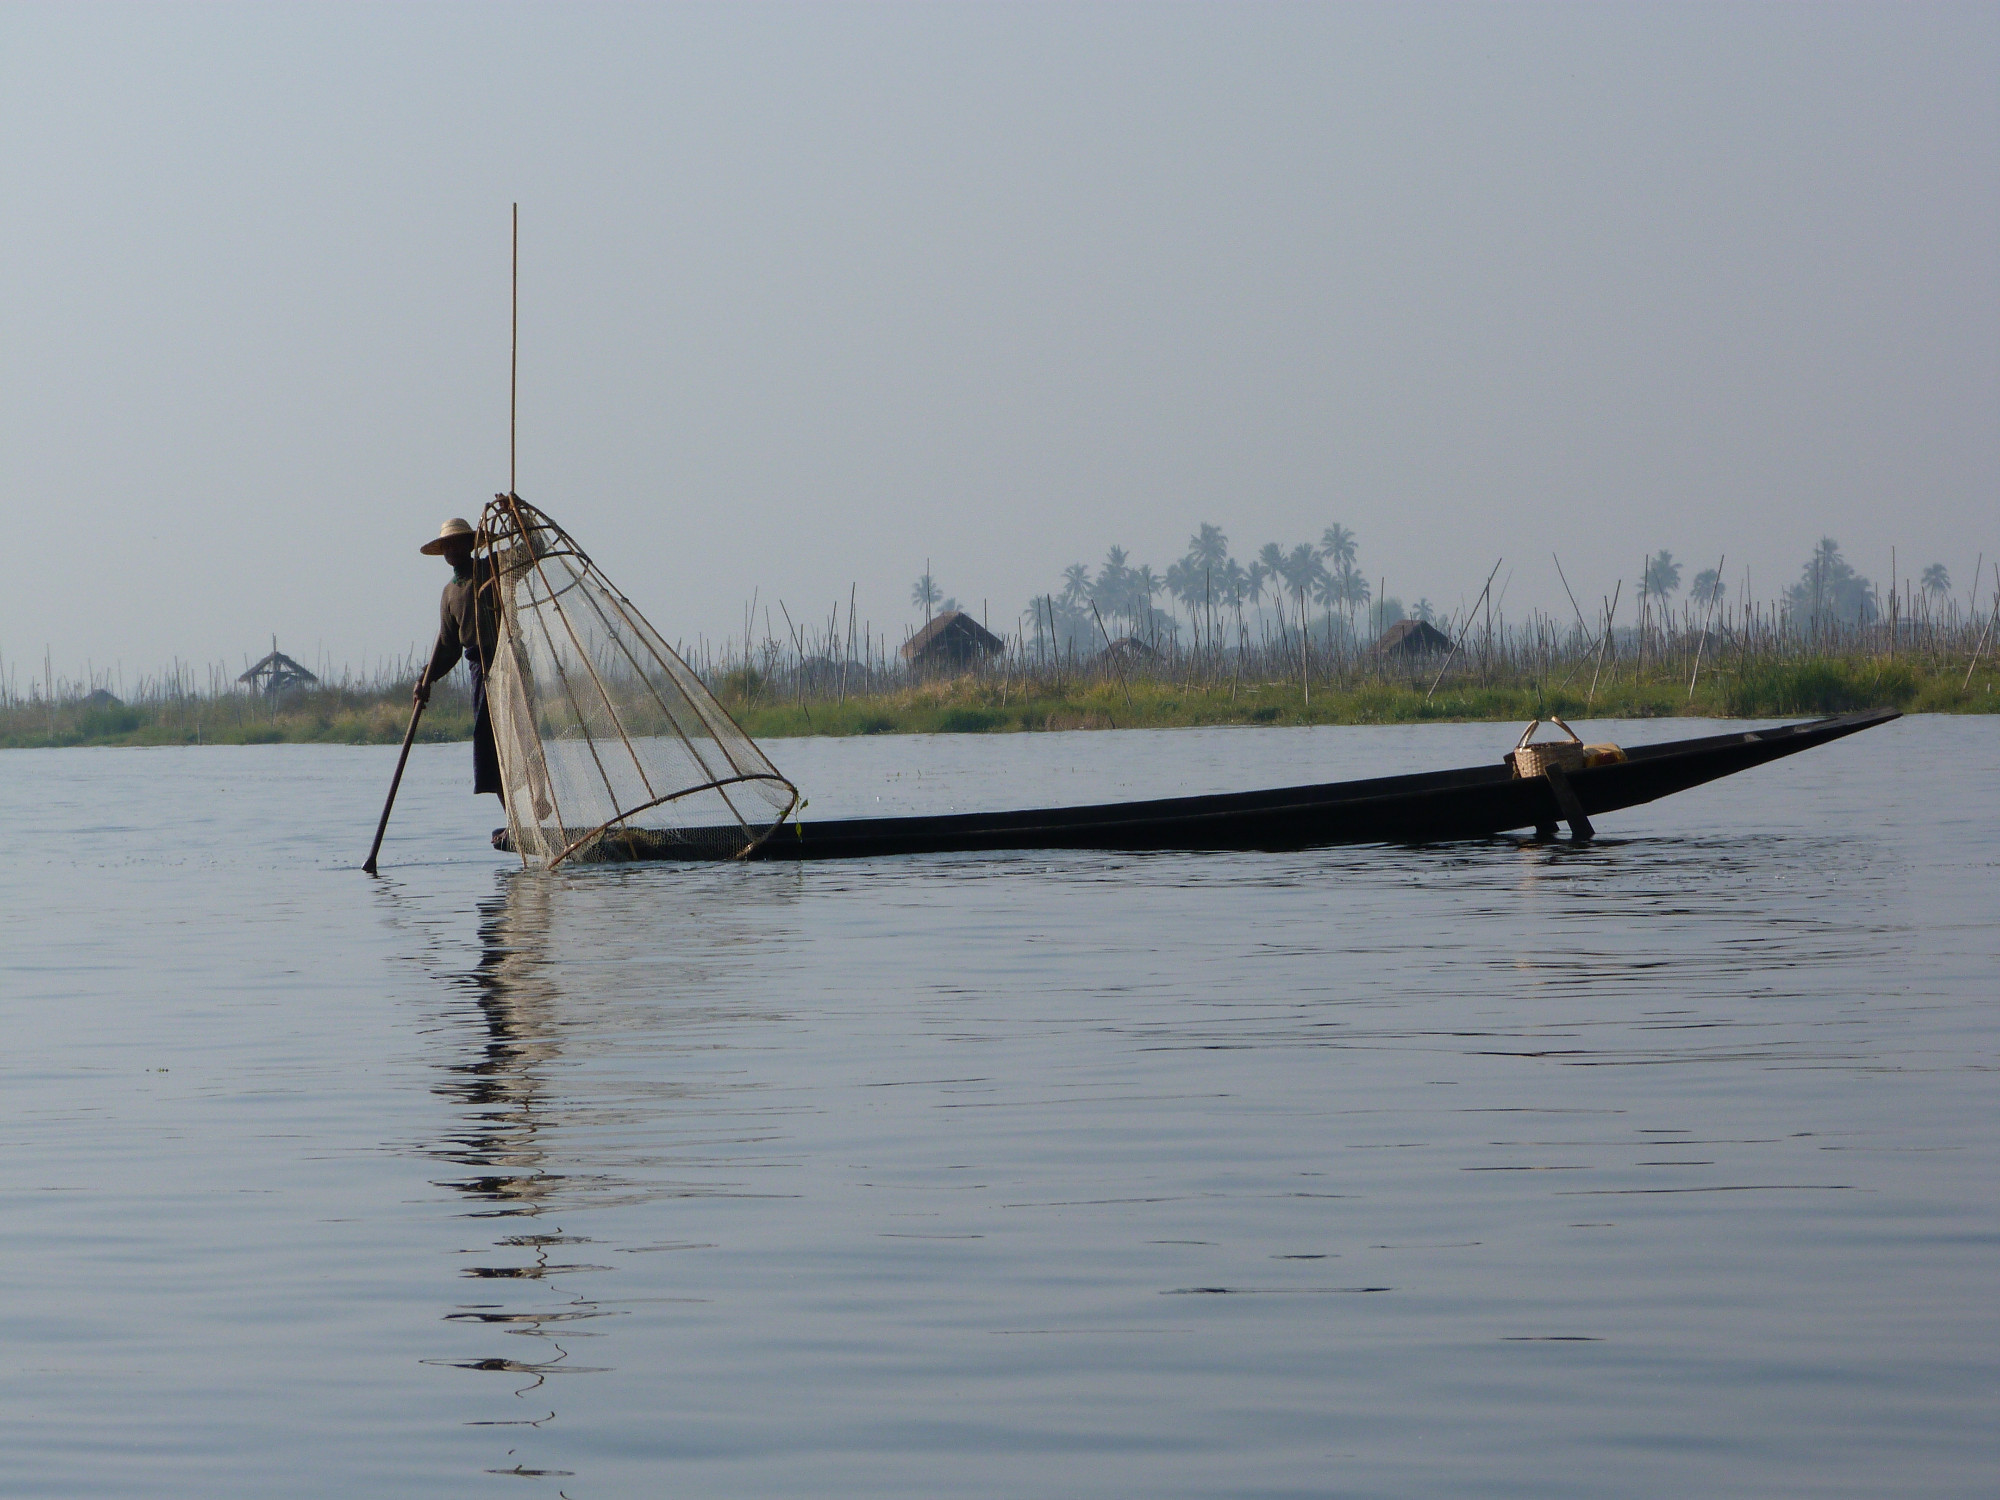 Fisherman using single leg oar/pole to move boat